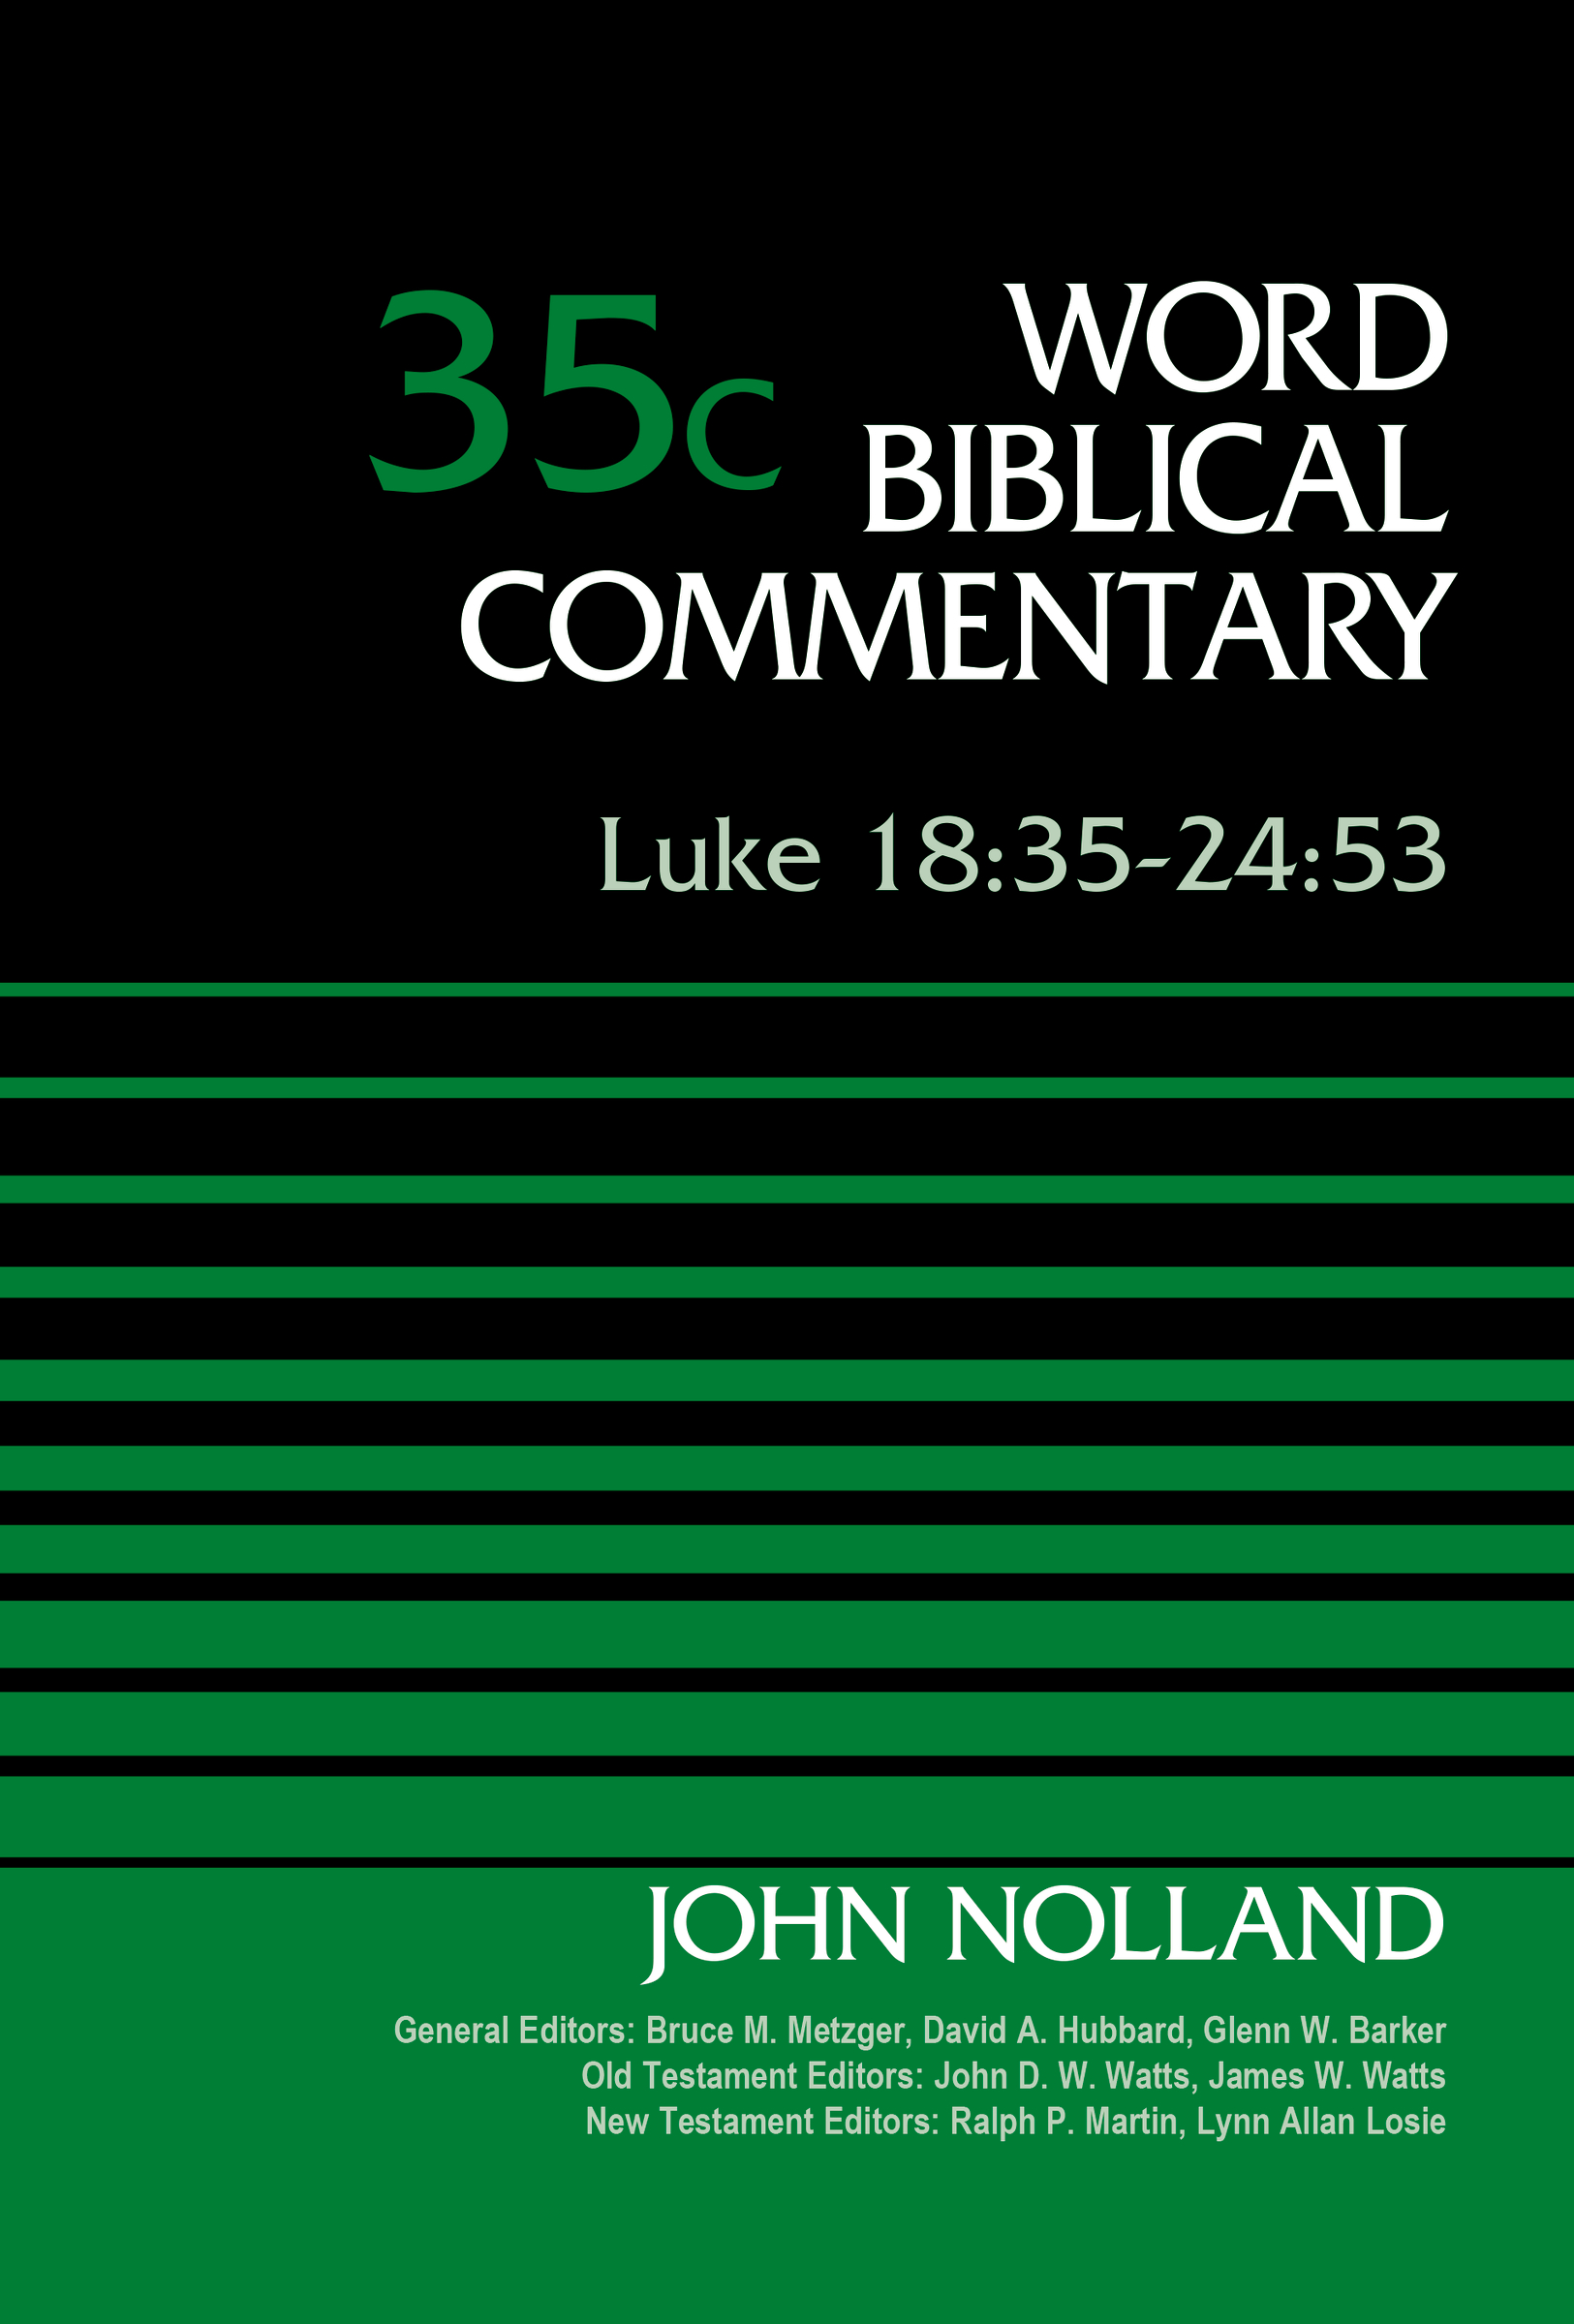 Luke 18:35-24:53, Volume 35C